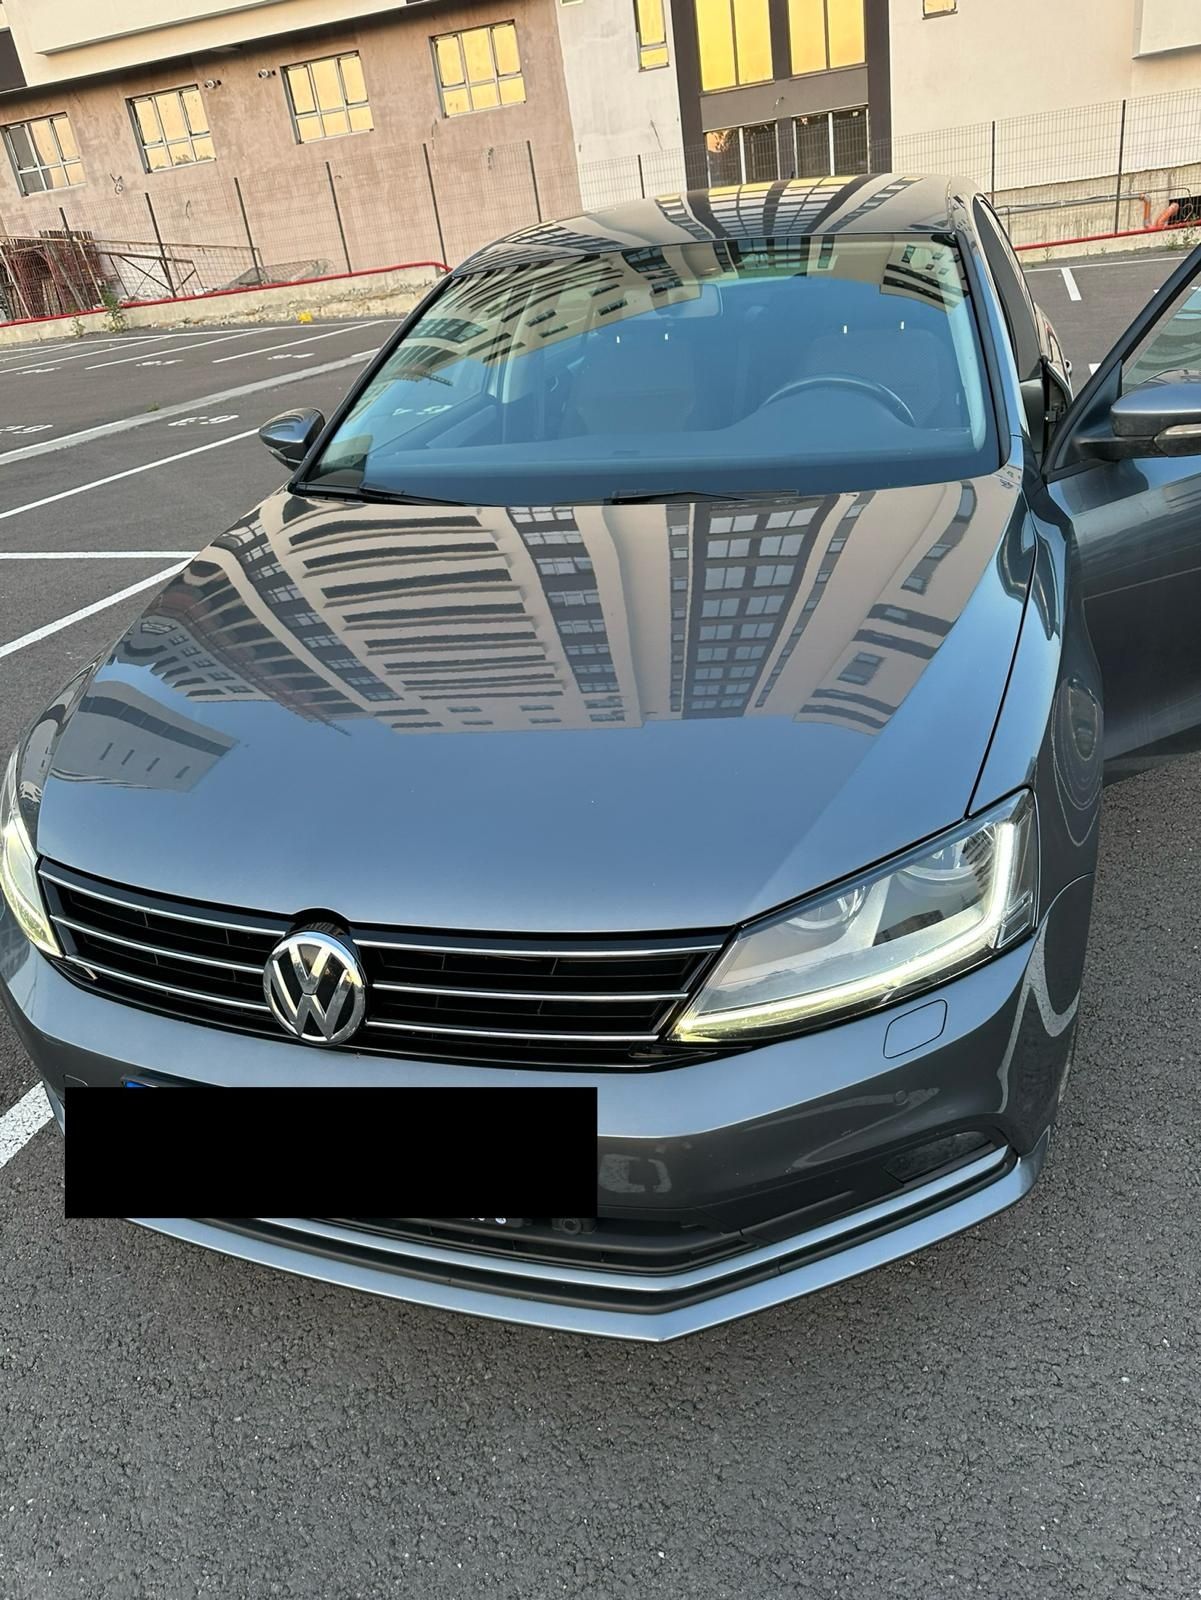 VW Volkswagen Jetta 2017 benzina